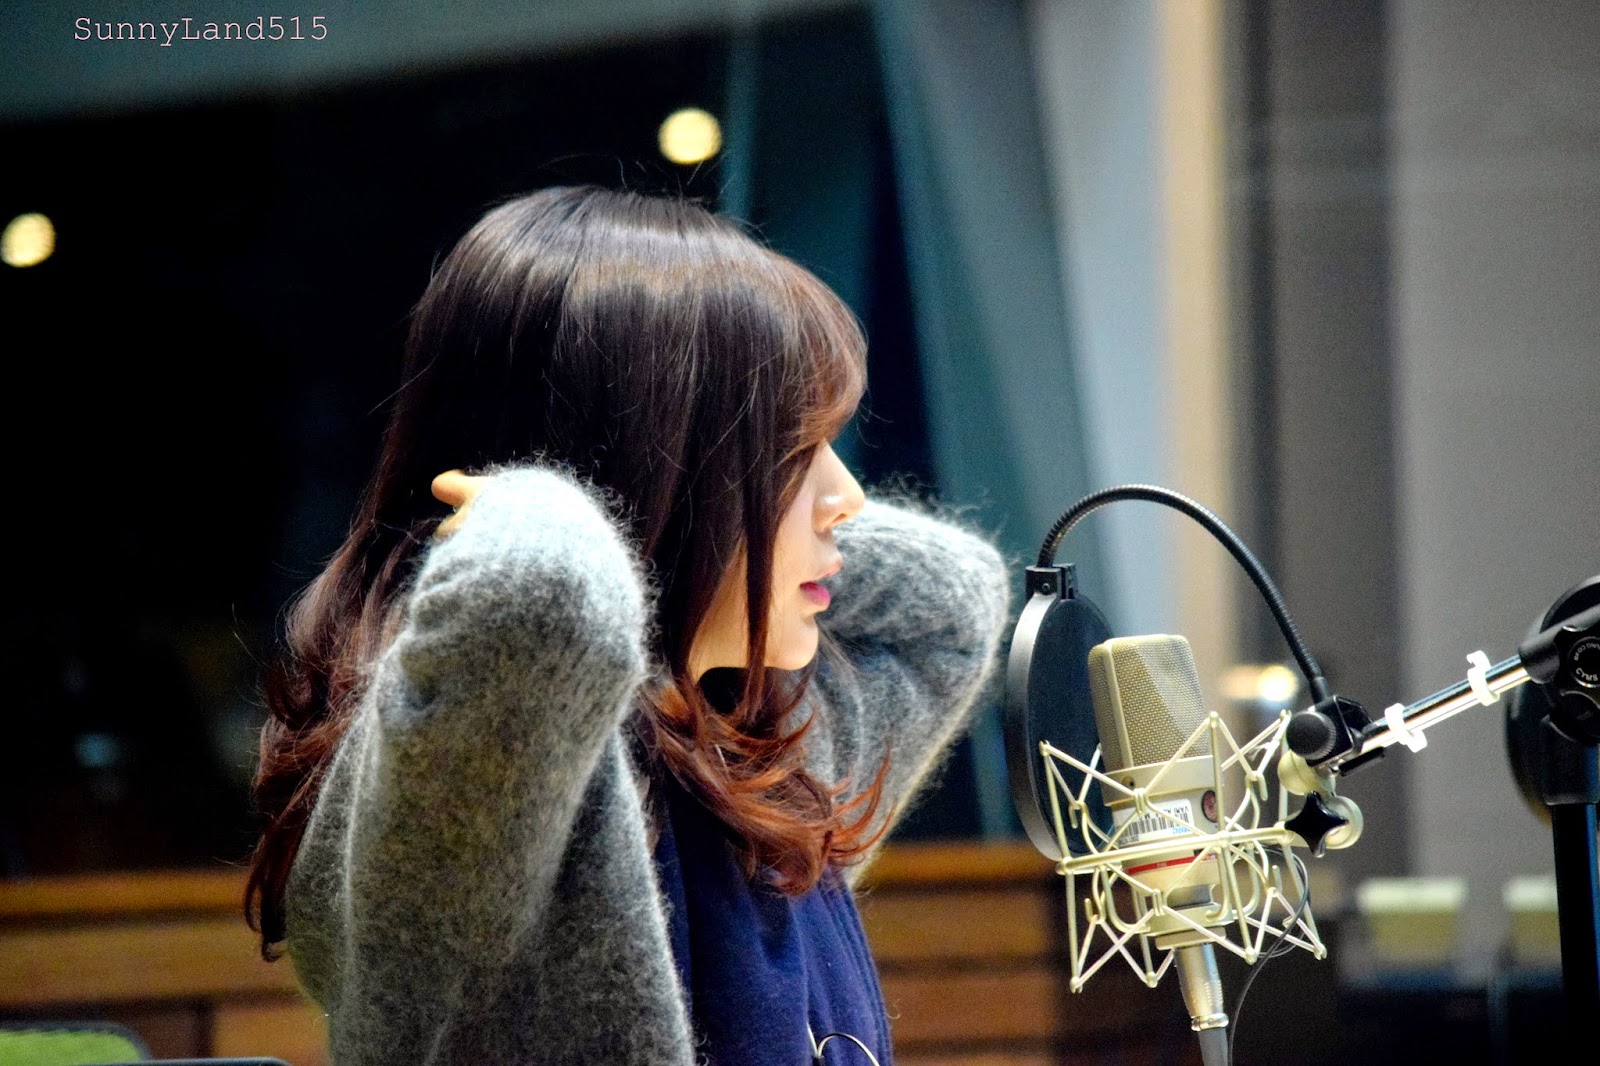 [OTHER][06-02-2015]Hình ảnh mới nhất từ DJ Sunny tại Radio MBC FM4U - "FM Date" - Page 10 DSC_0335_Fotor